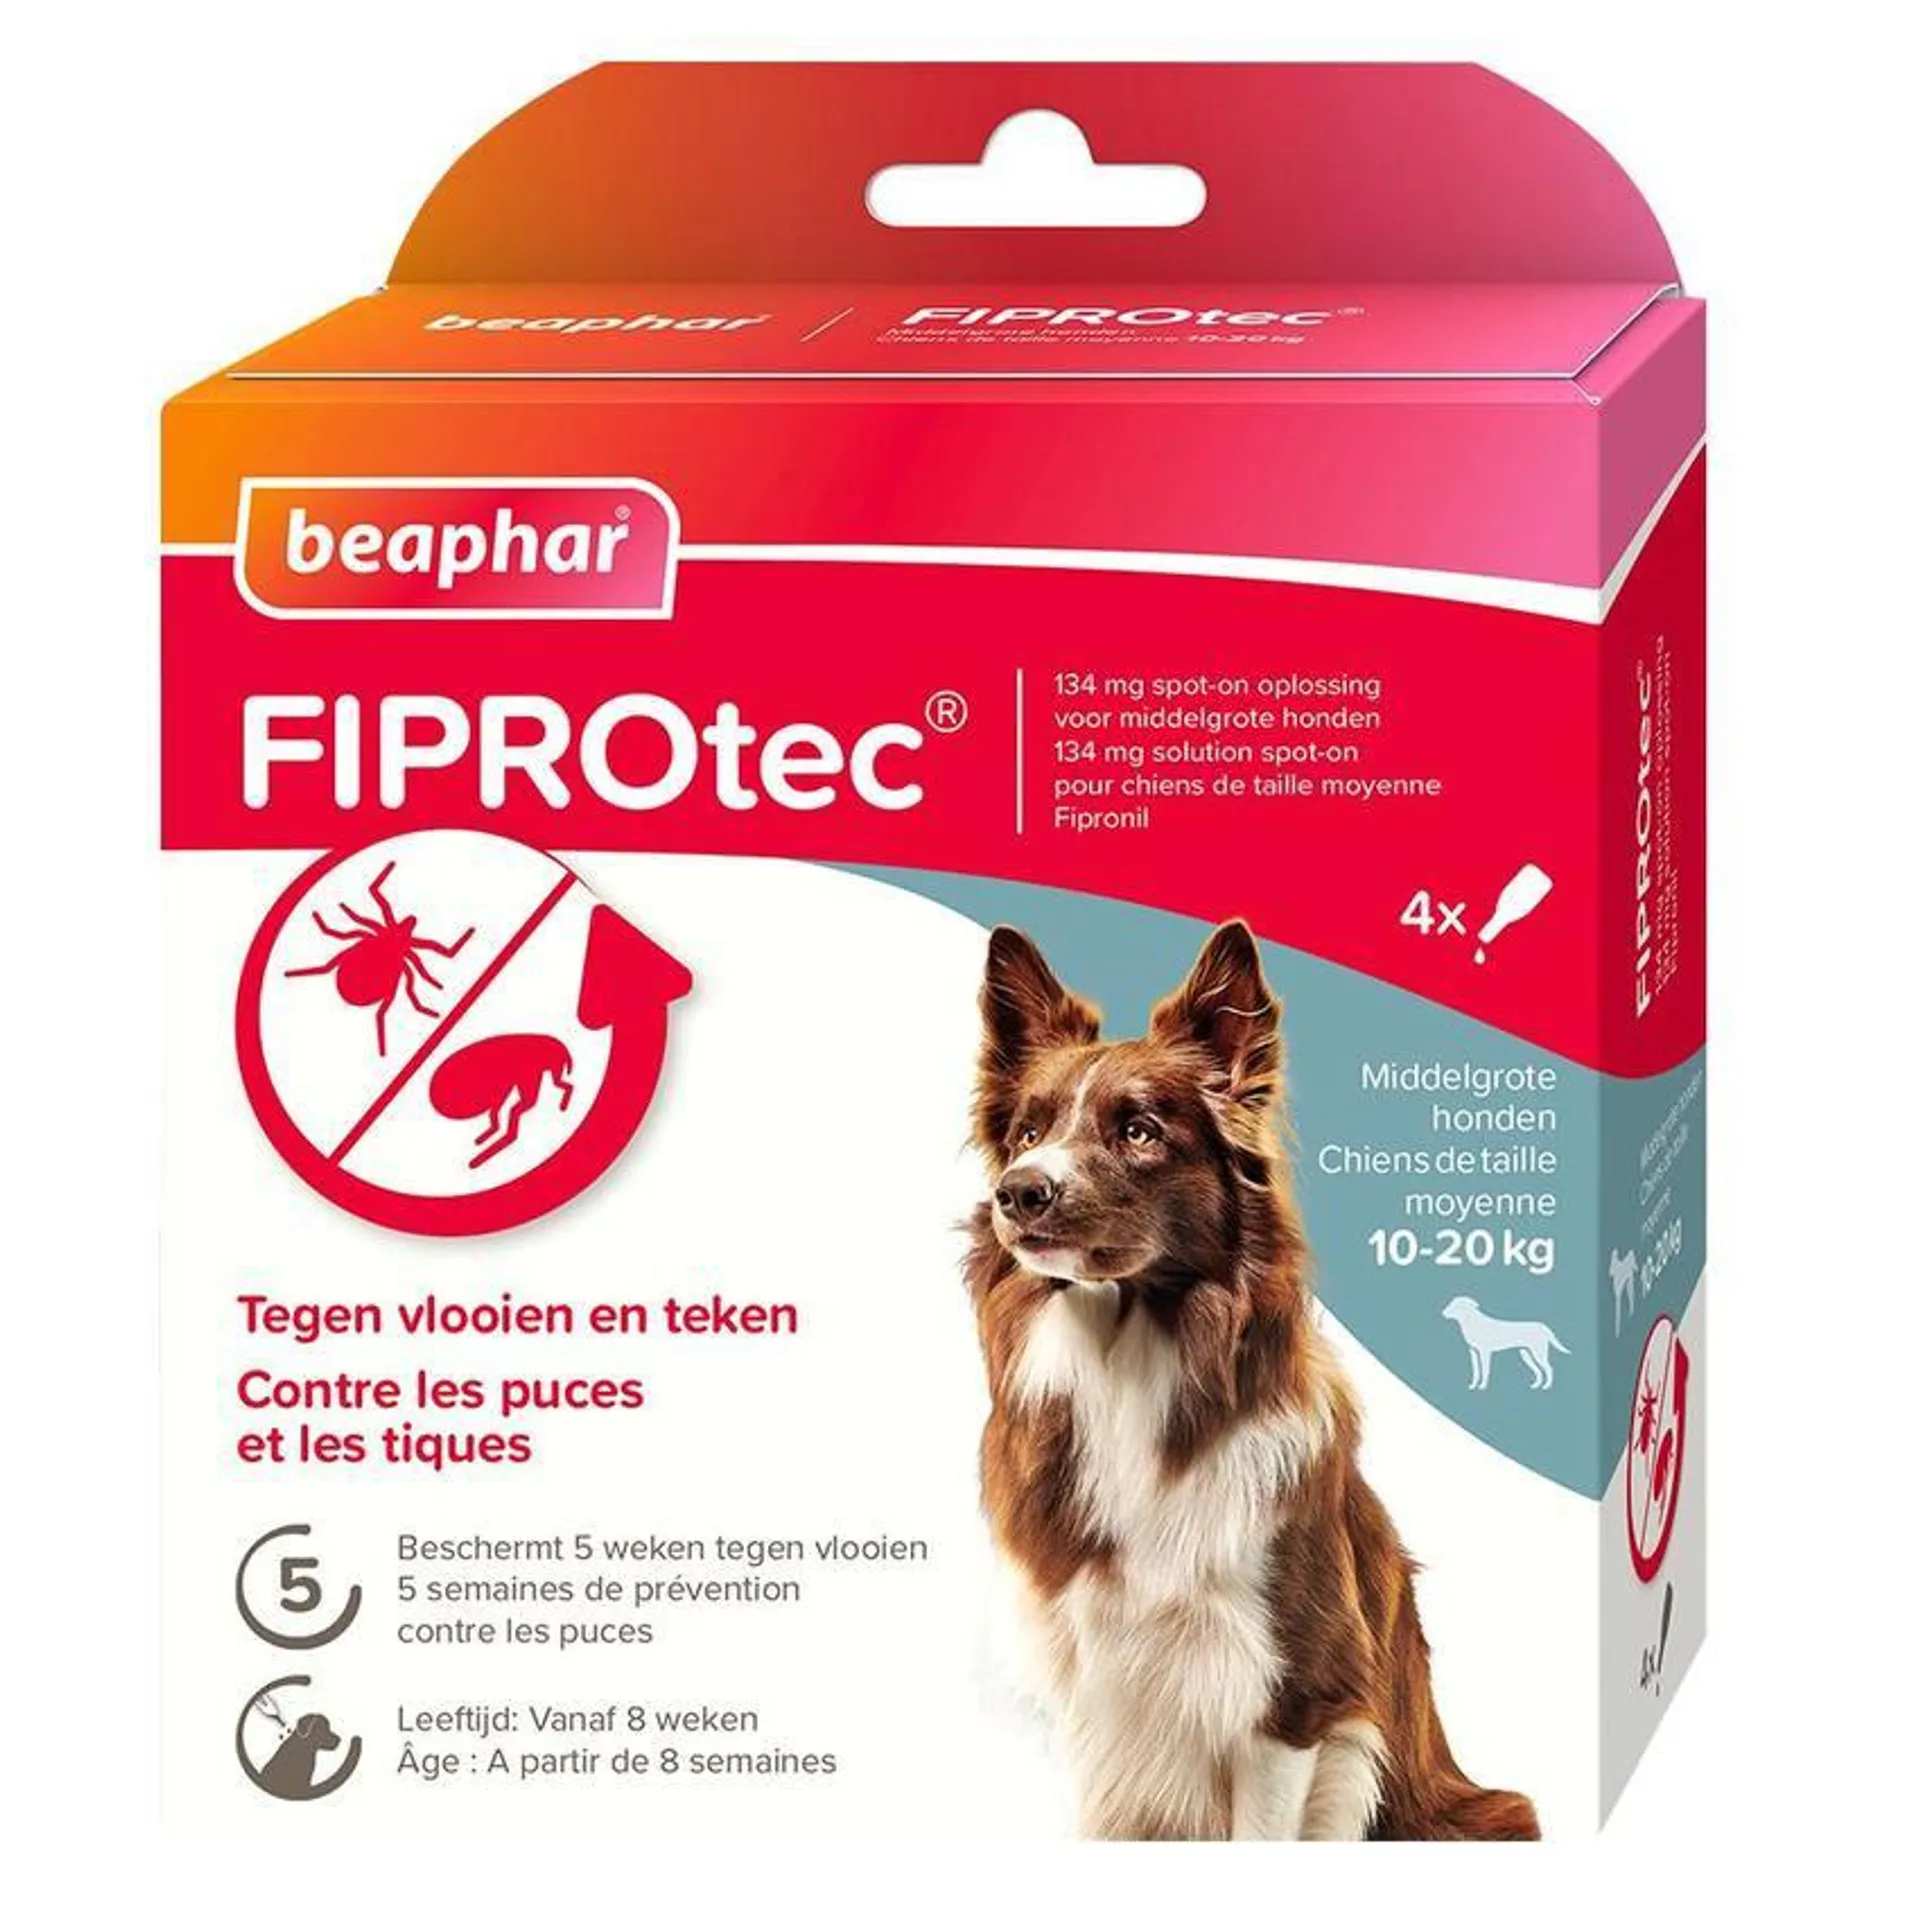 BEAPHAR Fiprotec hond 10-20kg 4pip